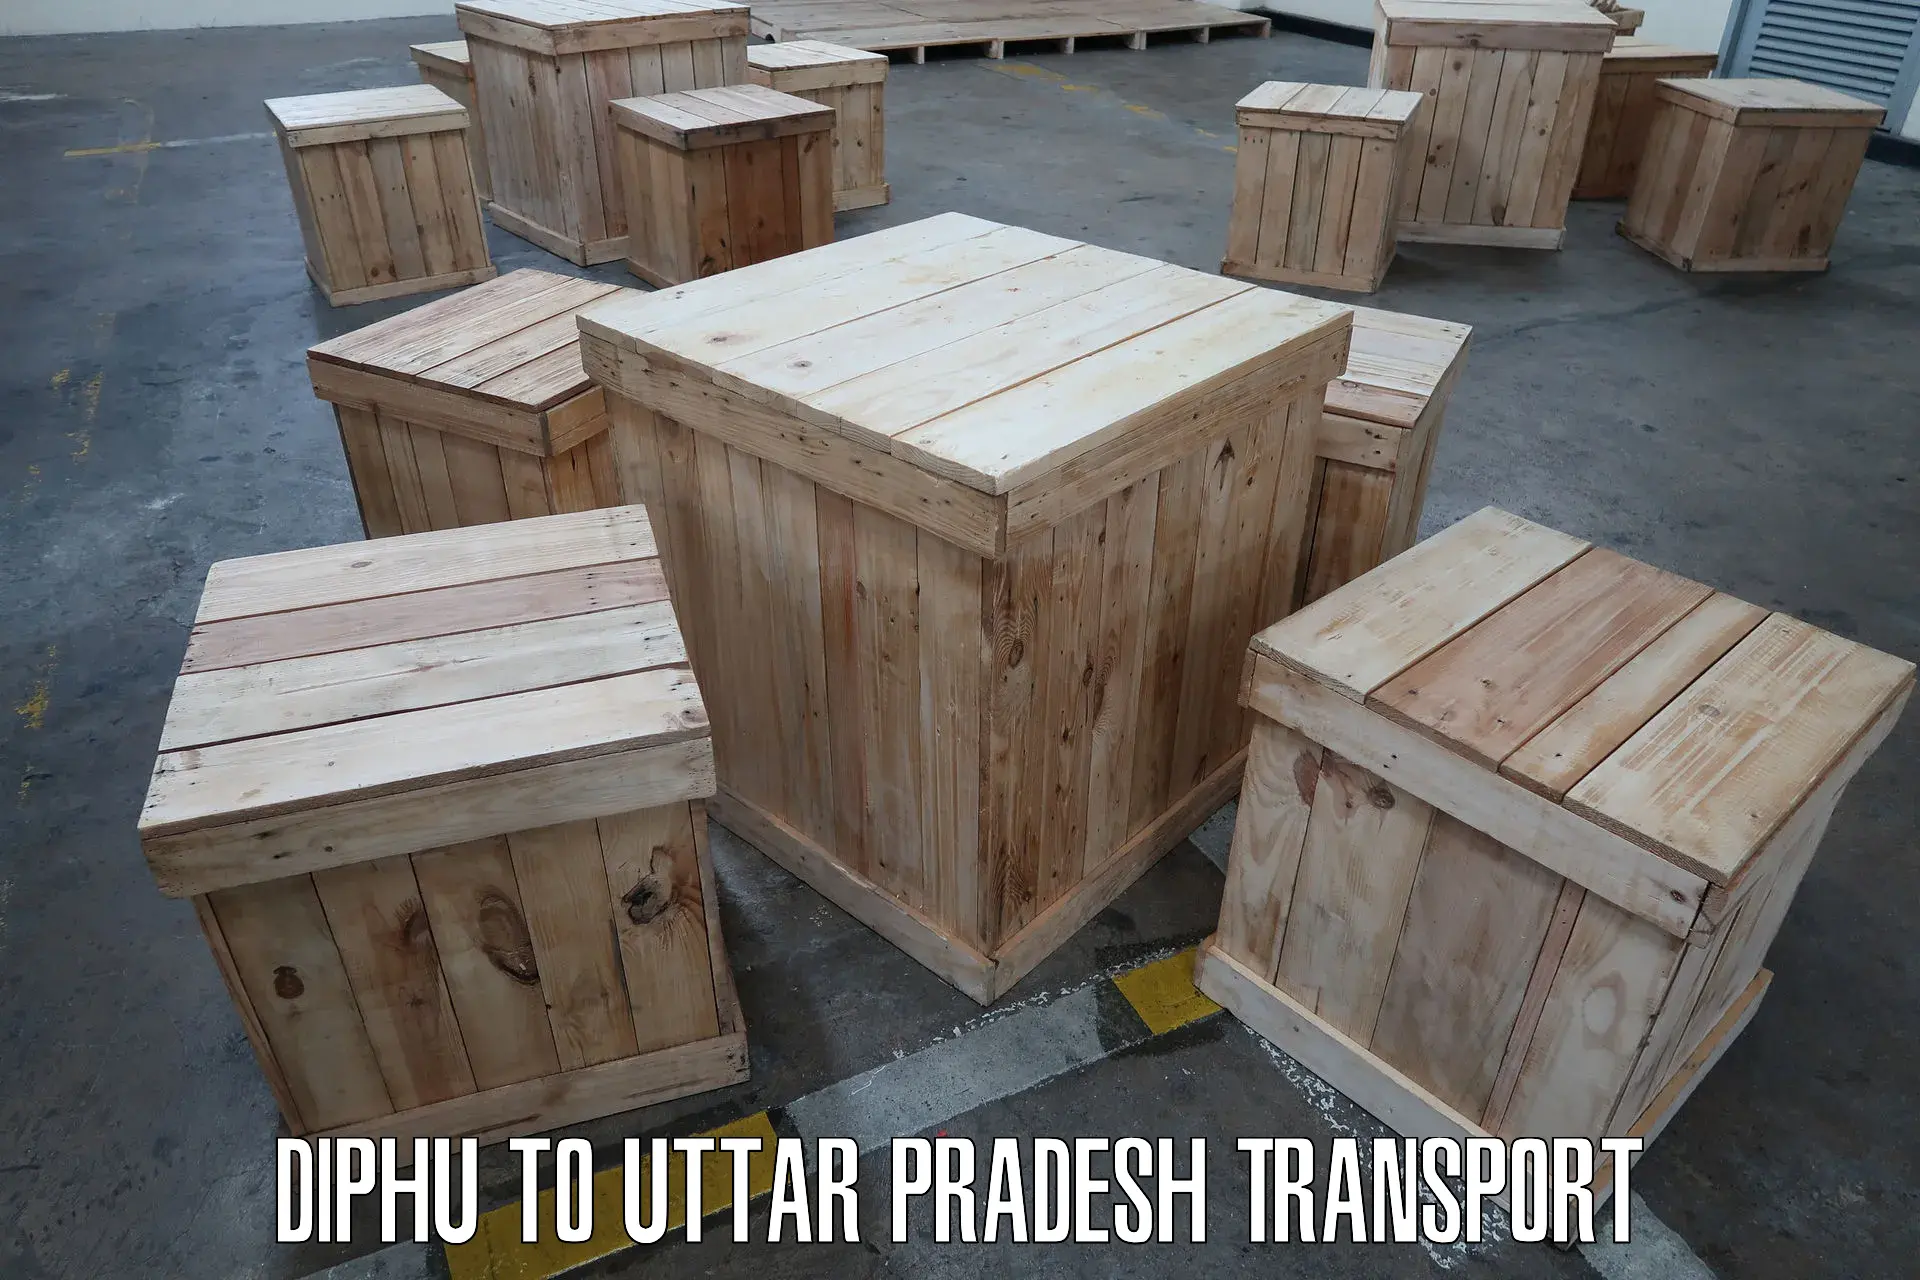 International cargo transportation services Diphu to Tilhar